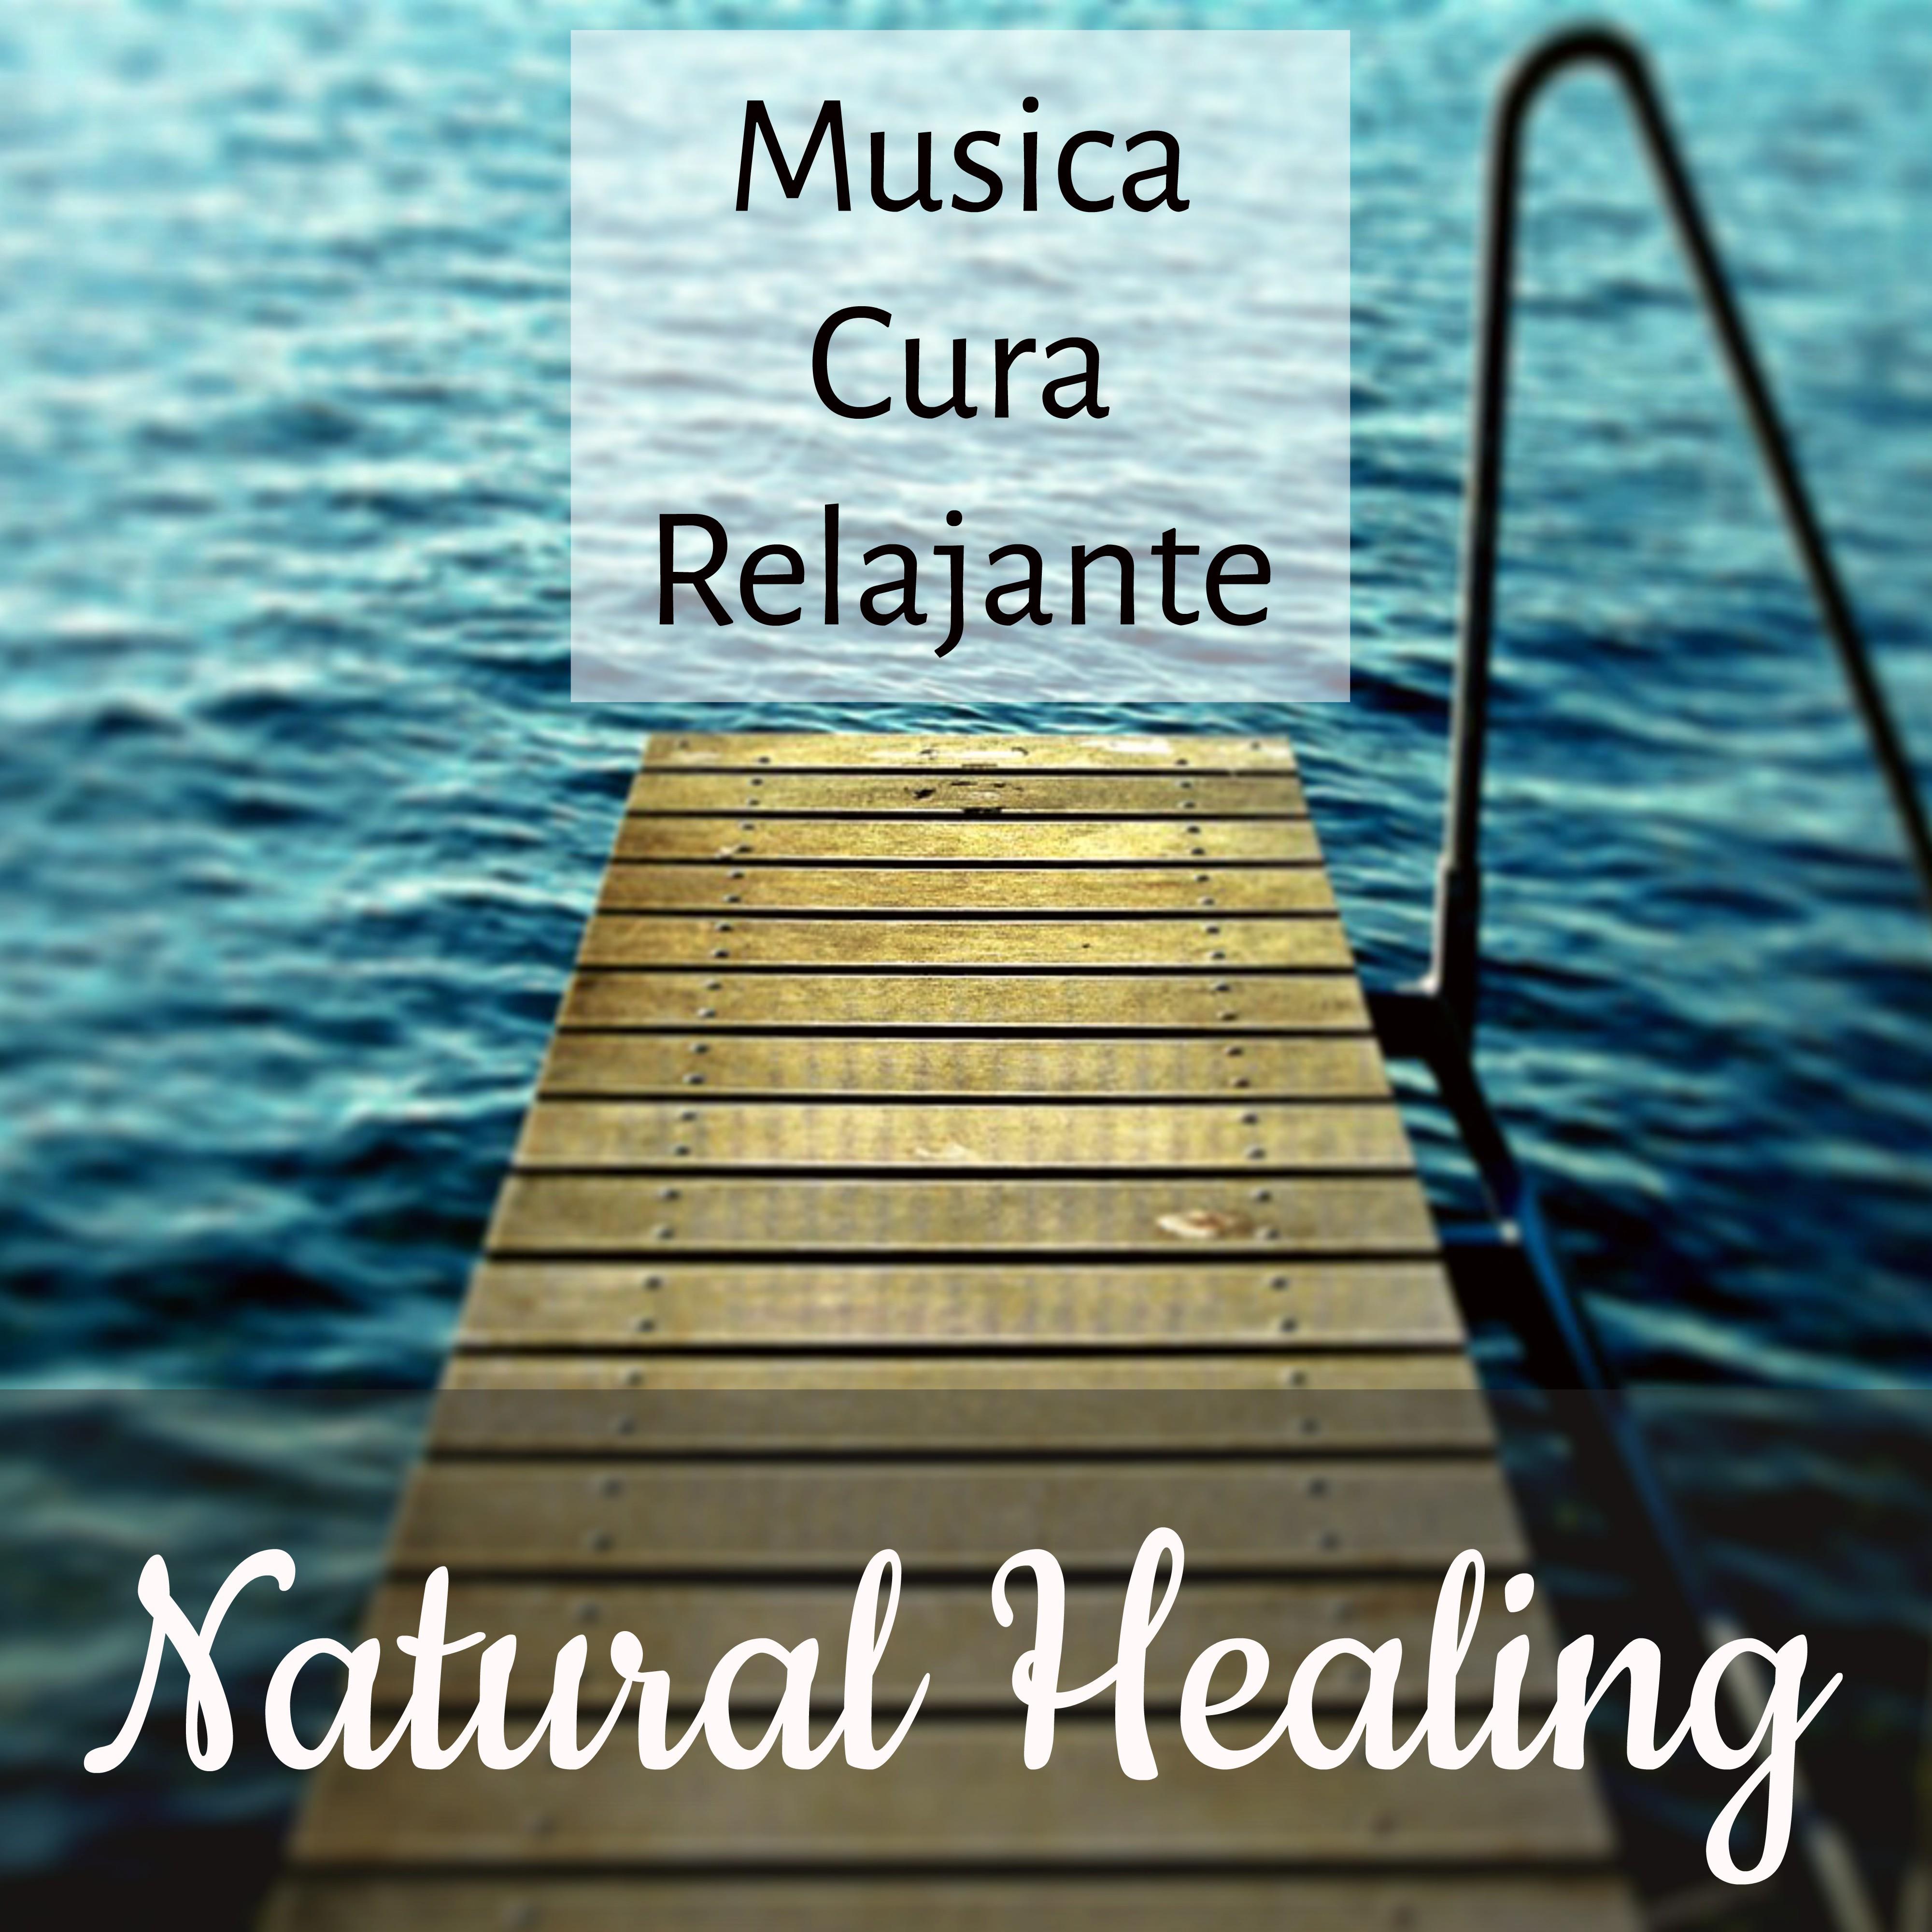 Natural Healing  Musica Yoga Cura Relajante para Desarrollo de la Mente Reducir la Ansiedad y Sanar el Alma con Sonidos de la Naturaleza Instrumentales de Meditacio n